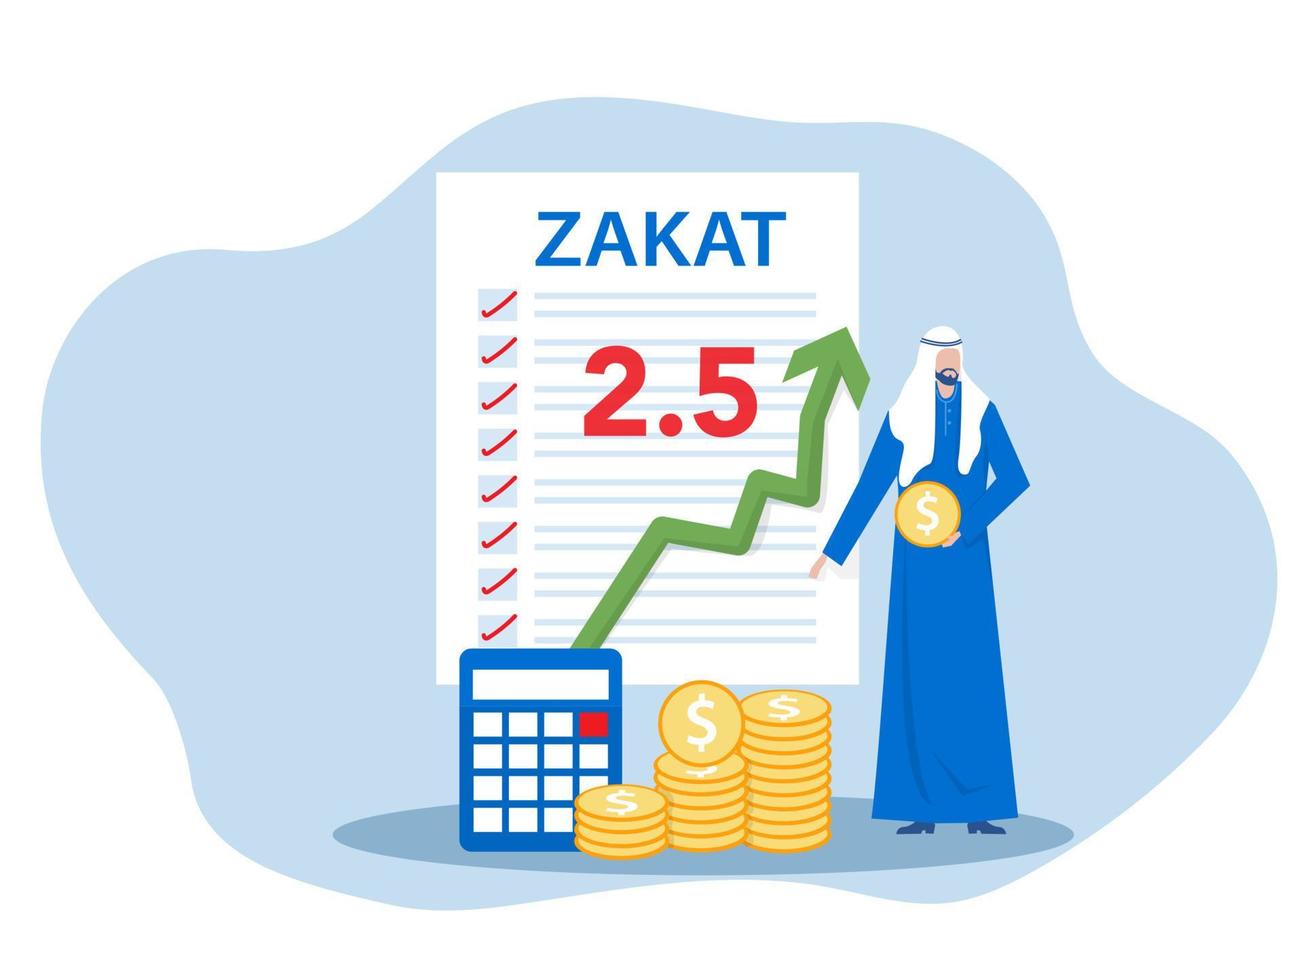 el hombre de negocios paga zakat de las ganancias en ramadan kareem concepto de zakat, fitrah en el mes sagrado de ramadan ilustración vectorial de caricatura plana vector